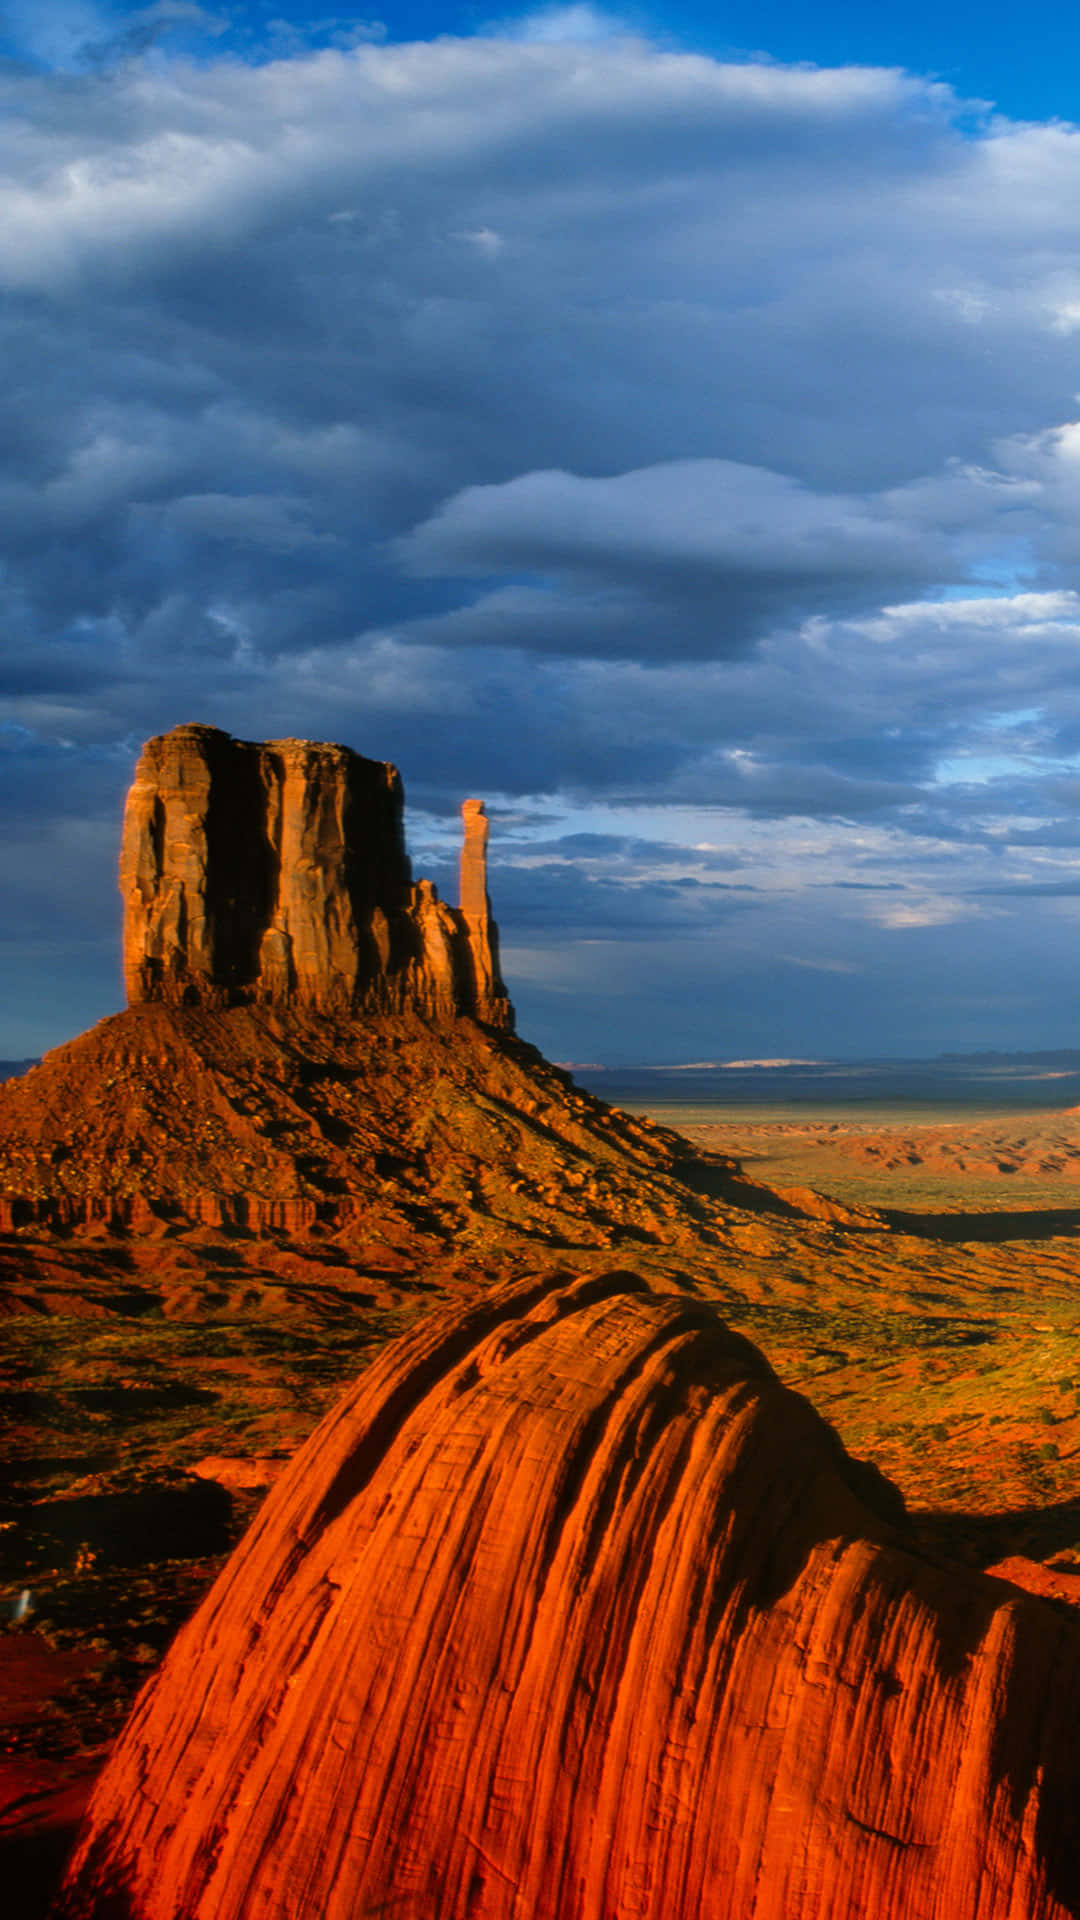 Monumentvalley Navajo Tribal Park East Mitten Kan Vara En Fantastisk Tapet För Din Dator Eller Mobiltelefon. Välj En Högupplöst Bild Som Kapar Det Spektakulära Landskapet Vid Parken Och Njut Av Underbara Vyer Varje Gång Du Öppnar Din Enhet! Wallpaper